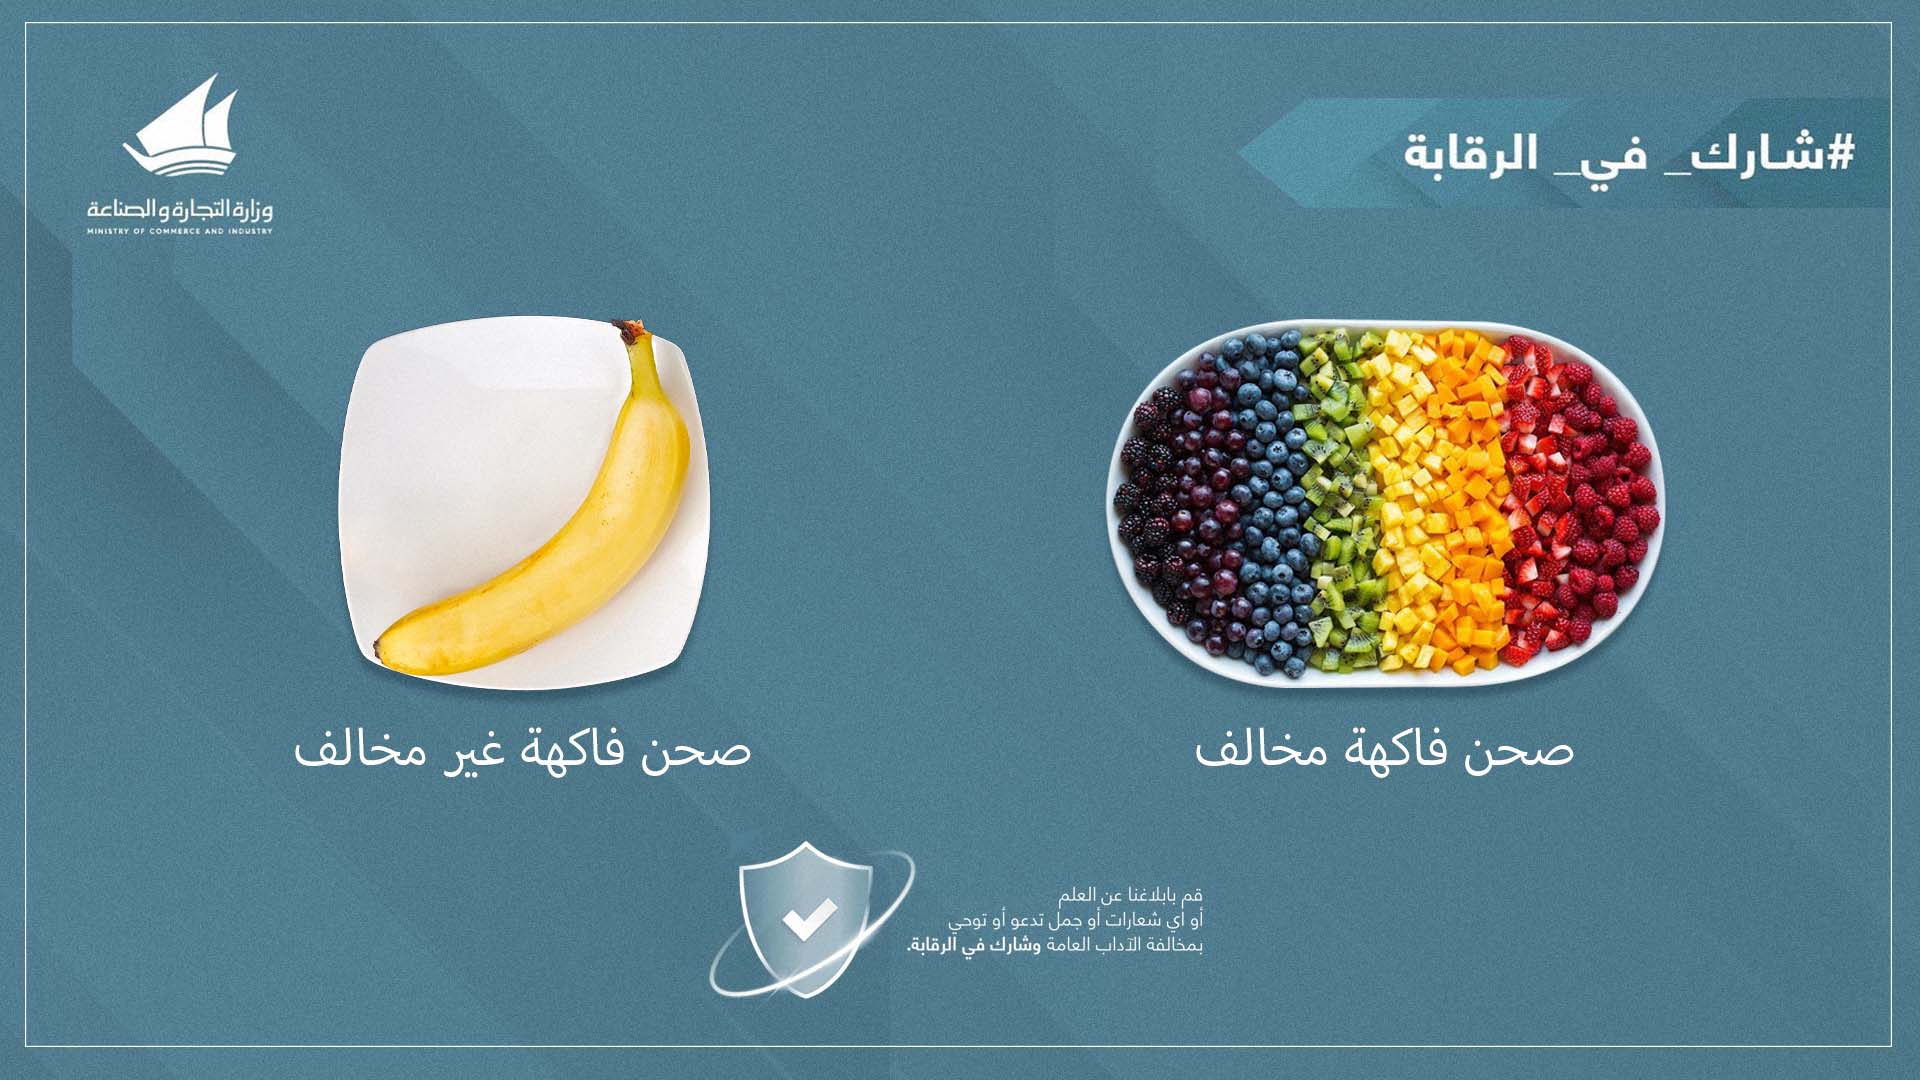 صورة  تشكيلات لصحن الفاكهة مسموحة في الكويت، تعرف عليها